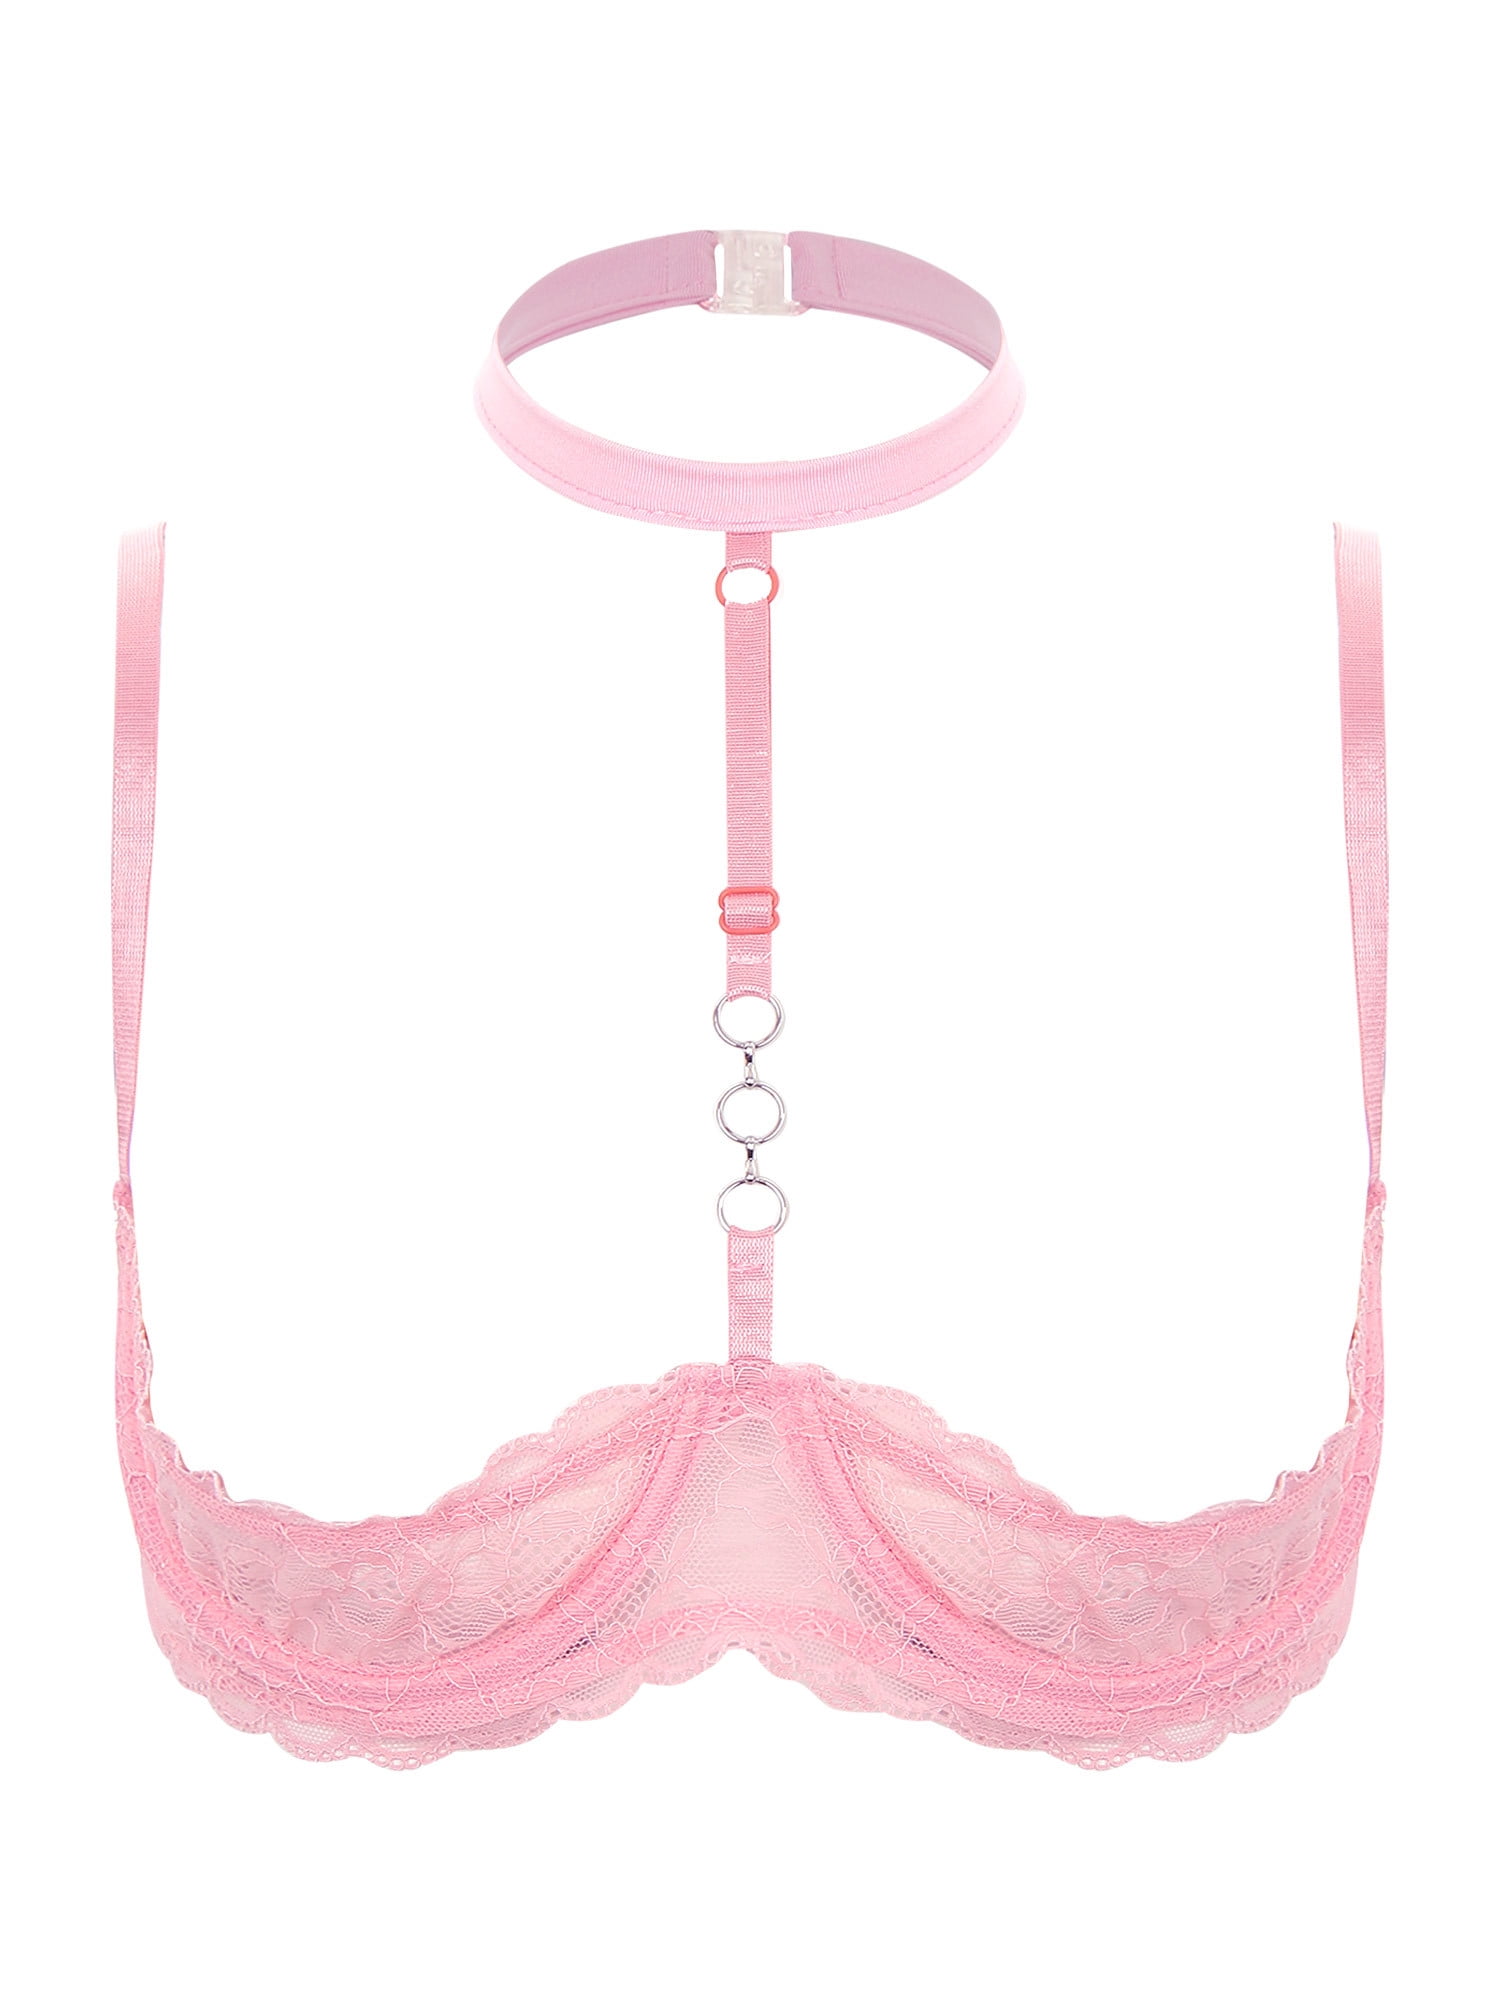 Buy LoveFifi Women's Shimmer Sheer Nipple-less Bra - One Size - Pink Online  at desertcartINDIA